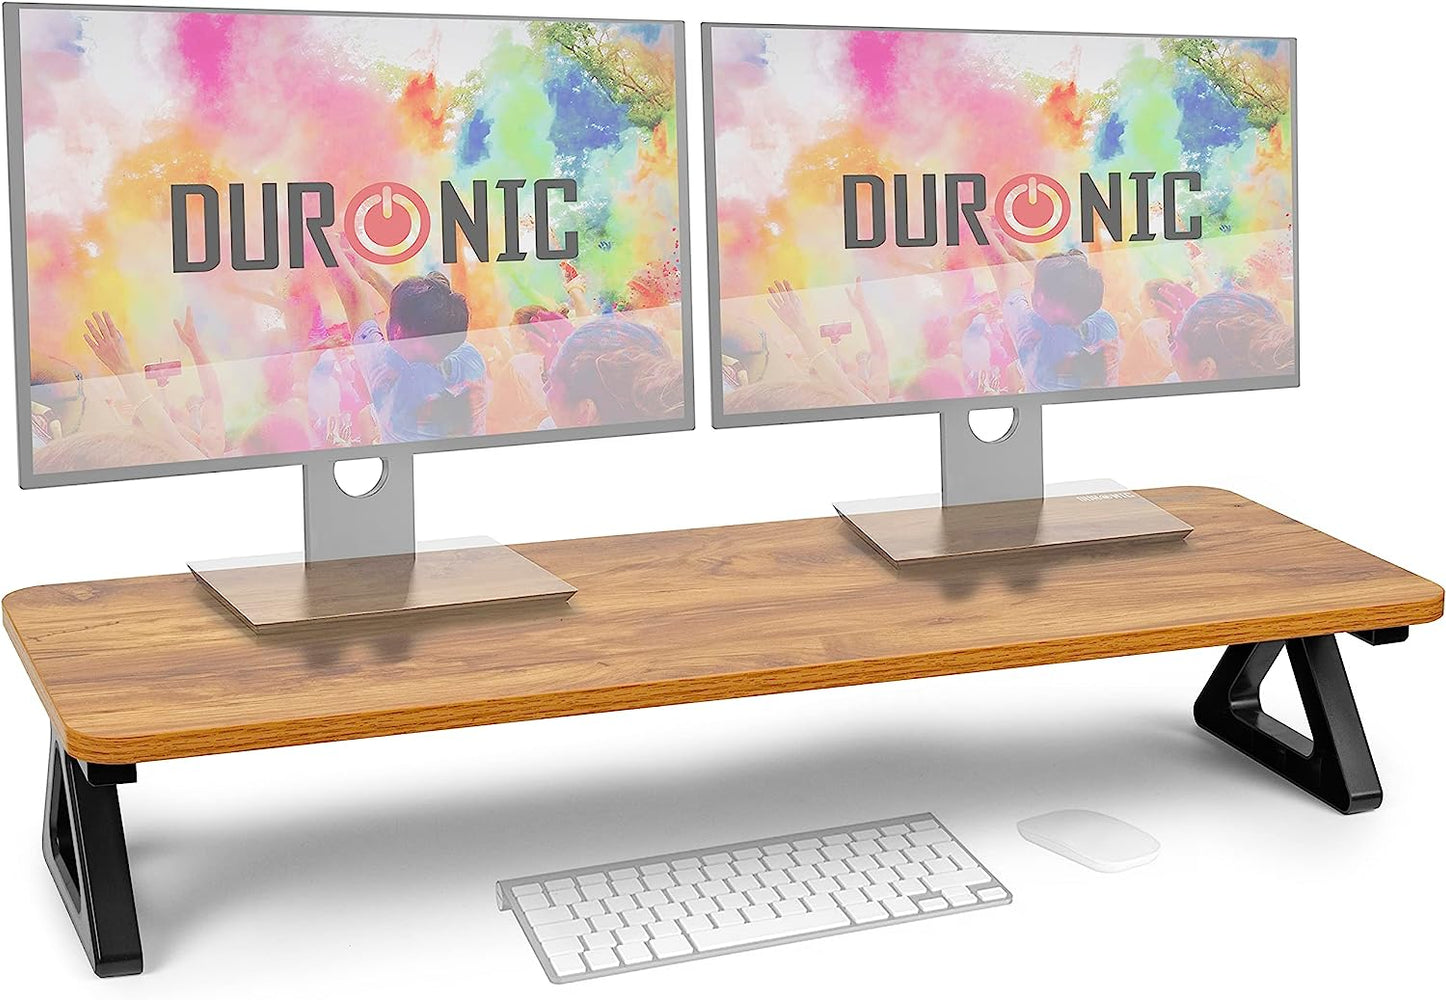 Duronic DM06-2 AO Support pour deux moniteurs en MDF 82 x 30 cm | Réhausseur d’écran d’ordinateur portable LCD LED TV | Pour 1 ou 2 écrans de 13,5cm | Espace de travail ergonomique avec rangement